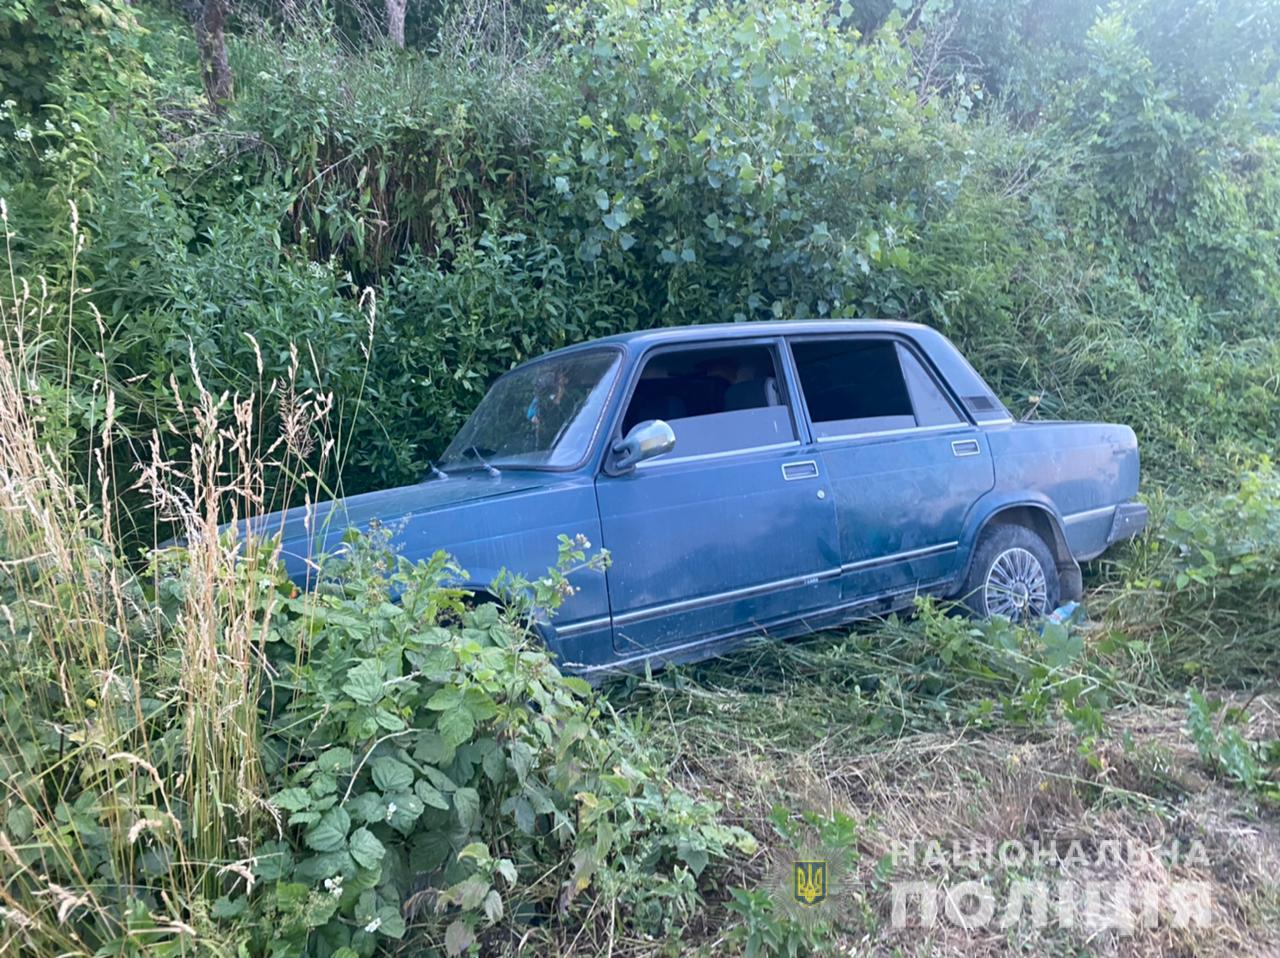 Вчора, 5 липня, в одному із сіл Берегівського району сталася бійка між сусідами. Після якої учасники конфлікту потрапили у ДТП.